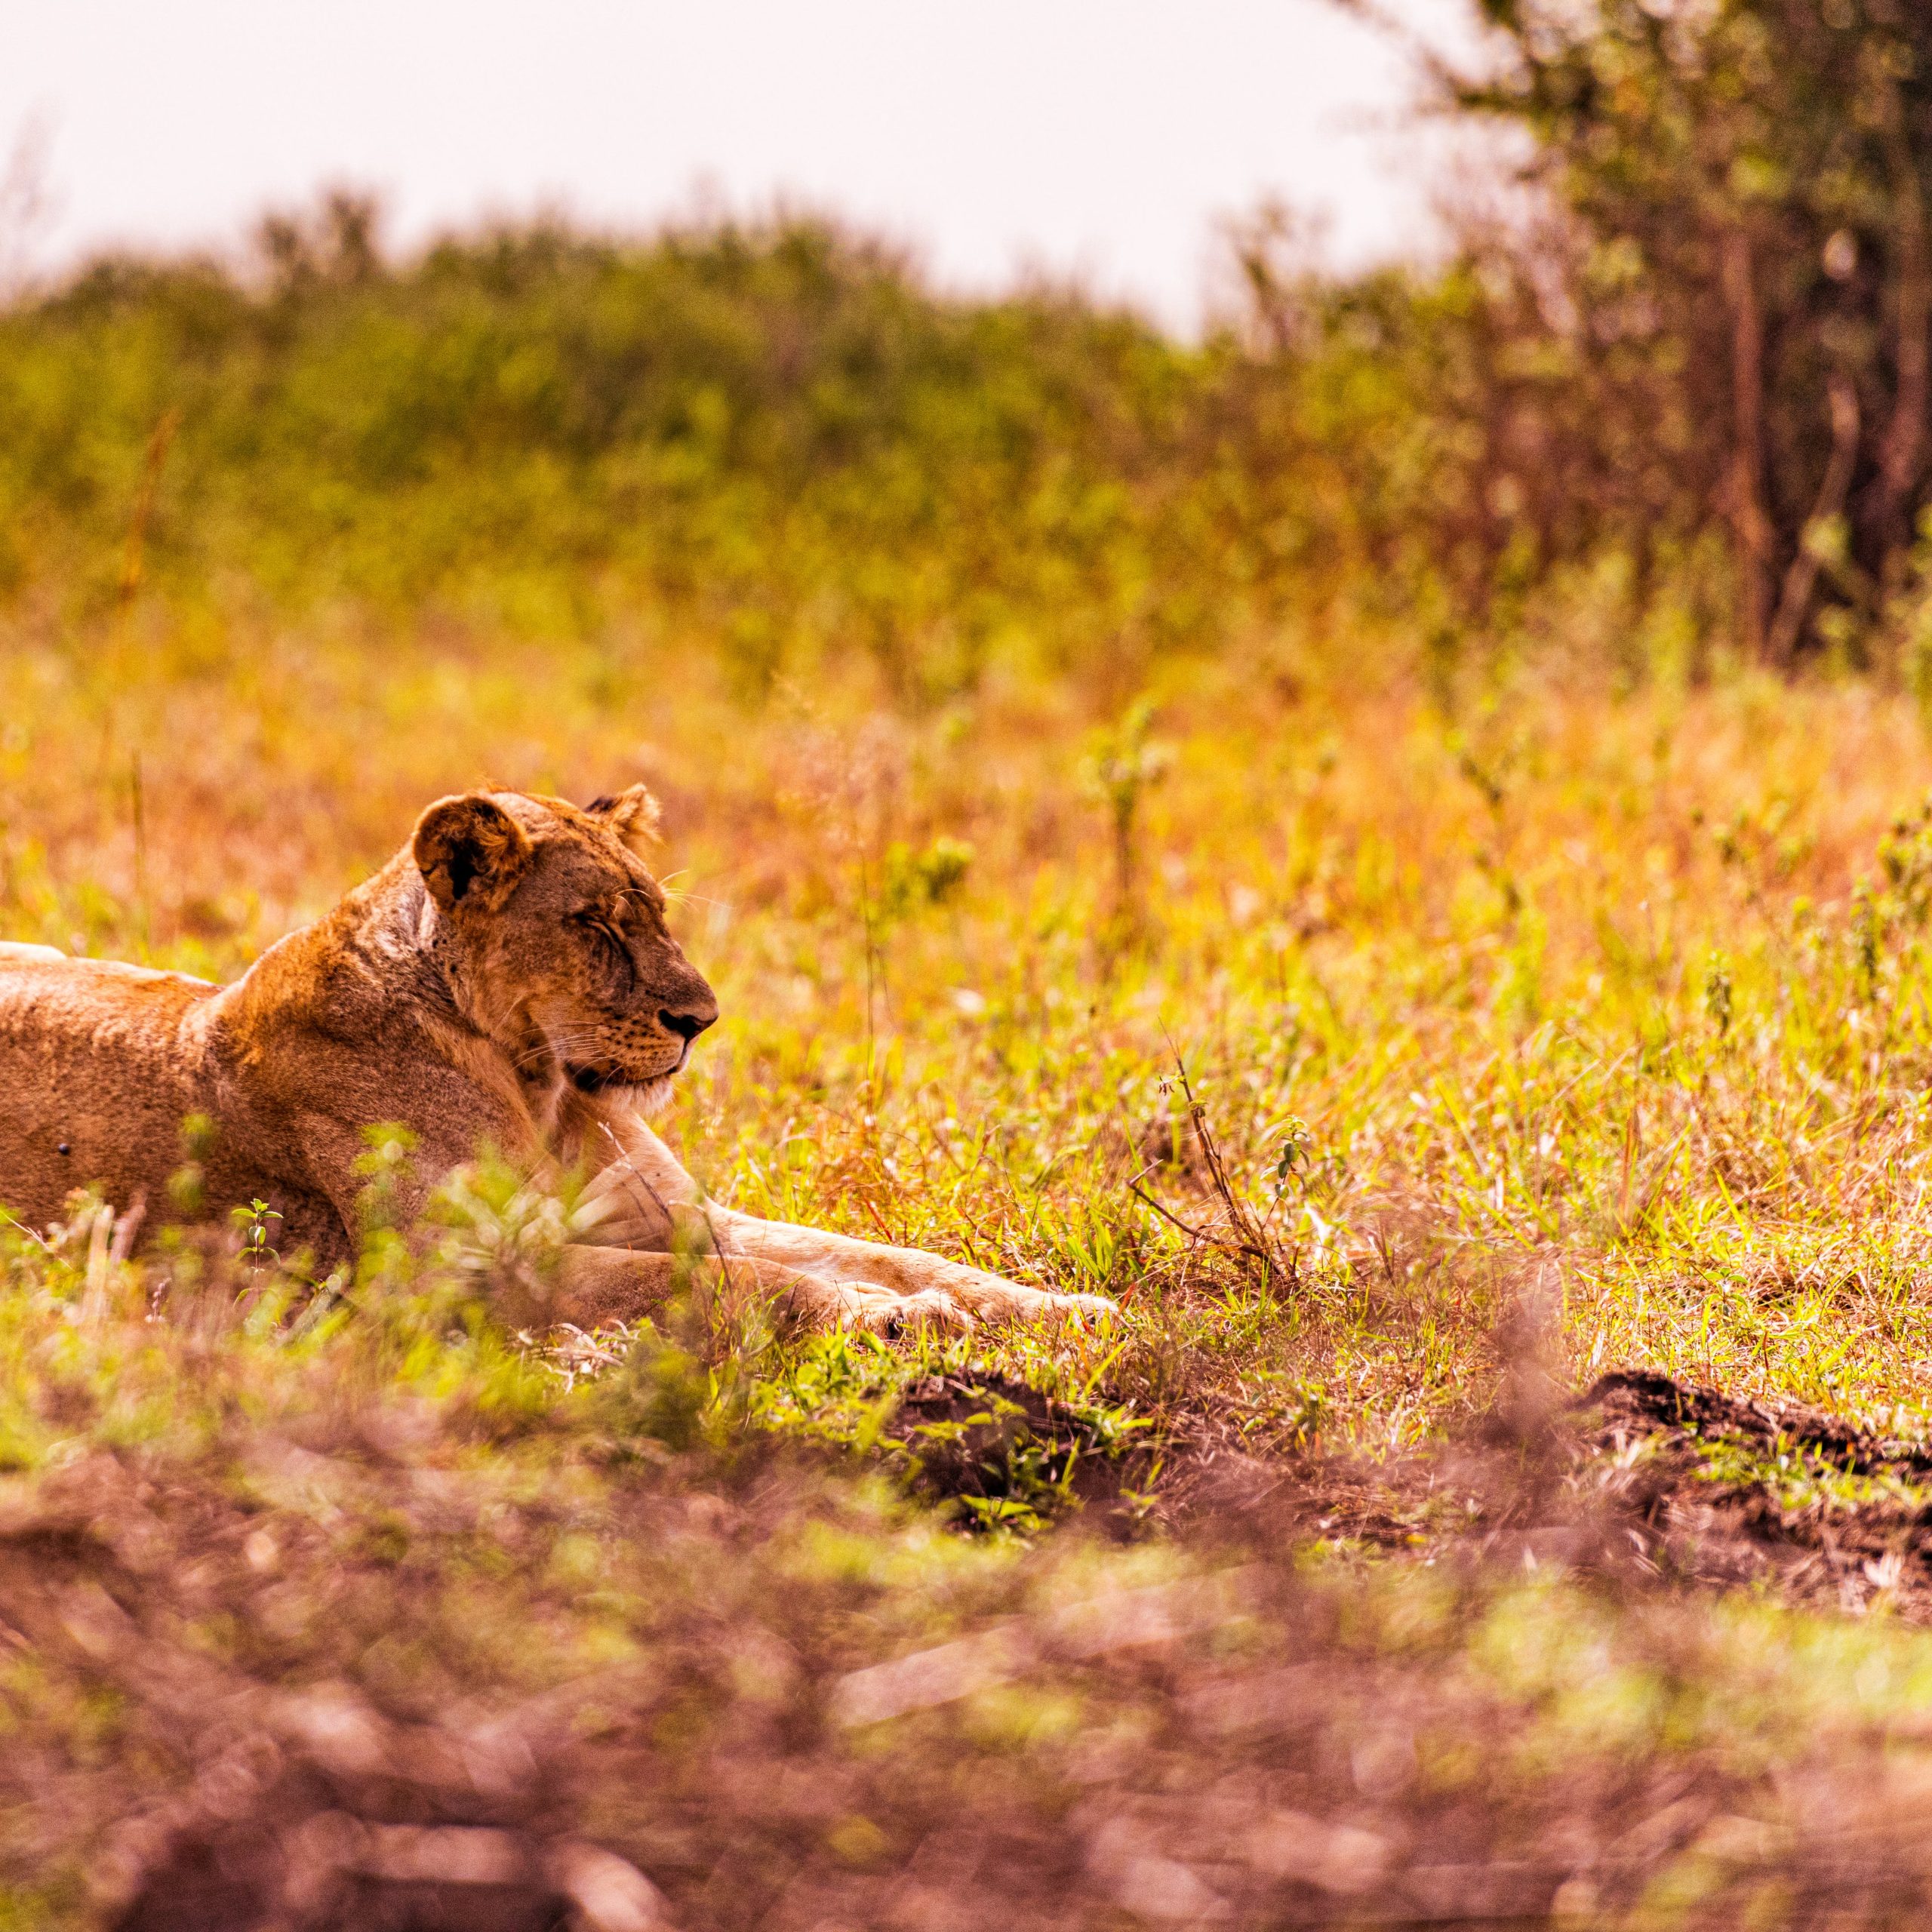  Day 7 Ndutu - Serengeti National Park